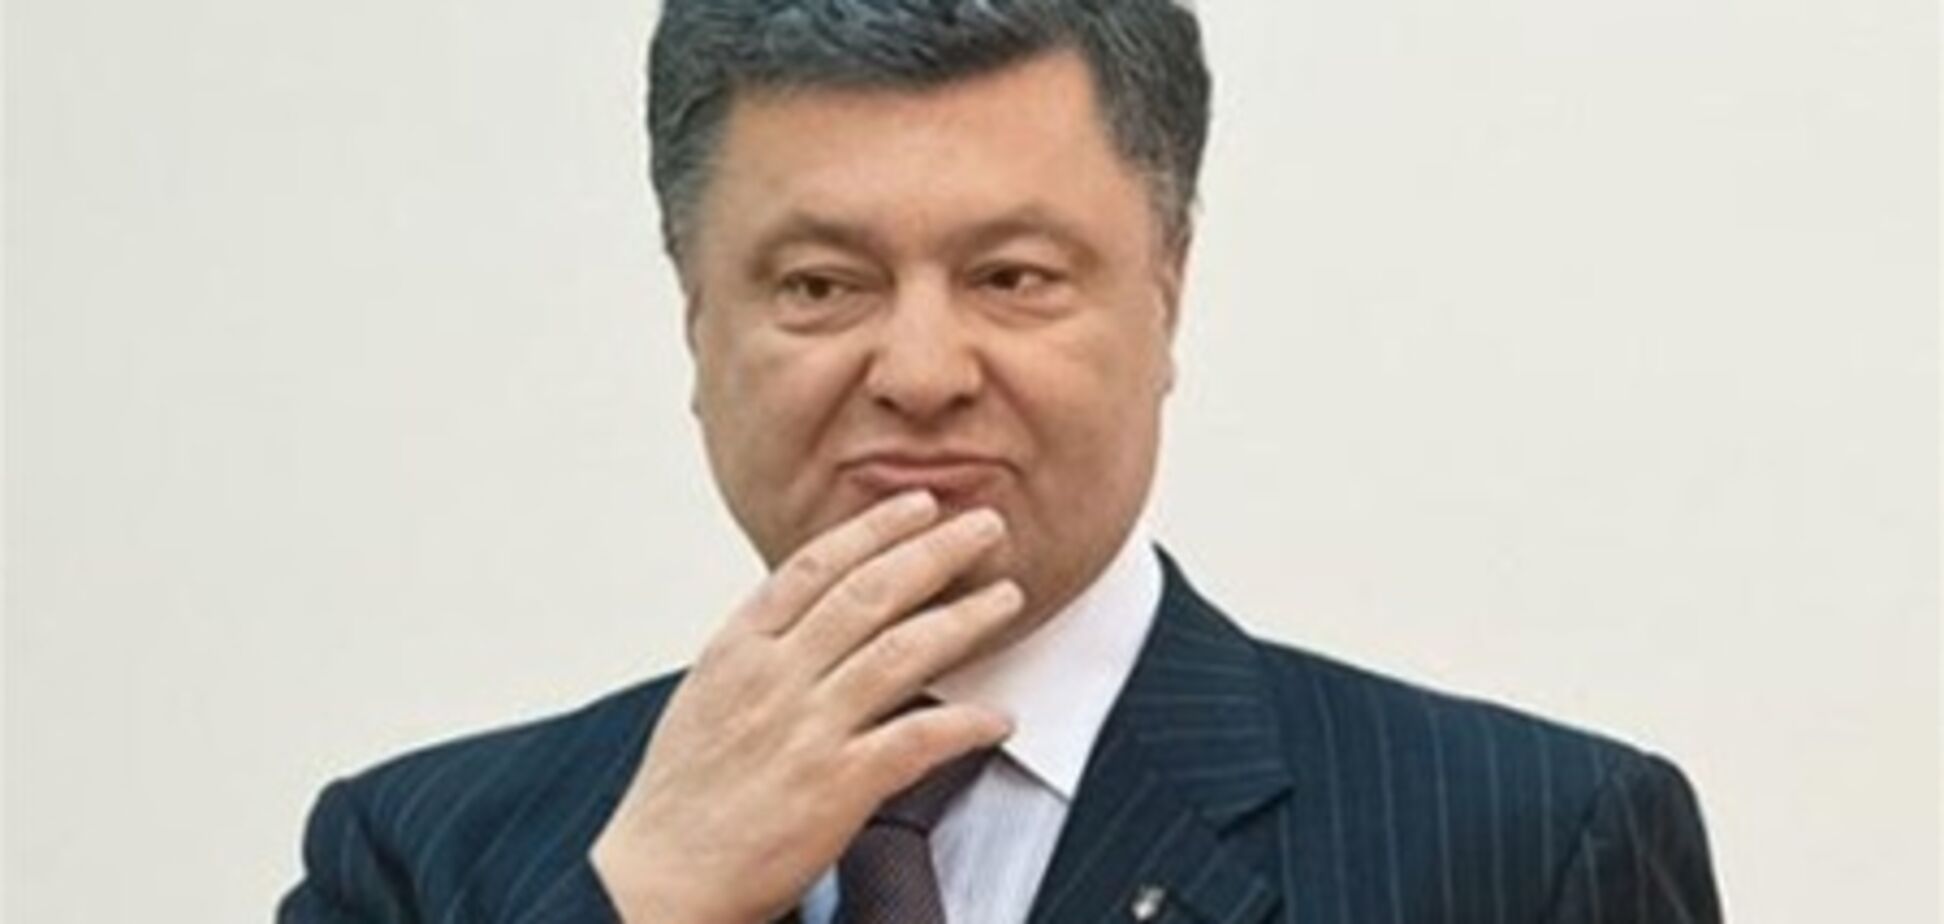 Порошенко знает кандидата от оппозиции в мэры Киева, но не скажет